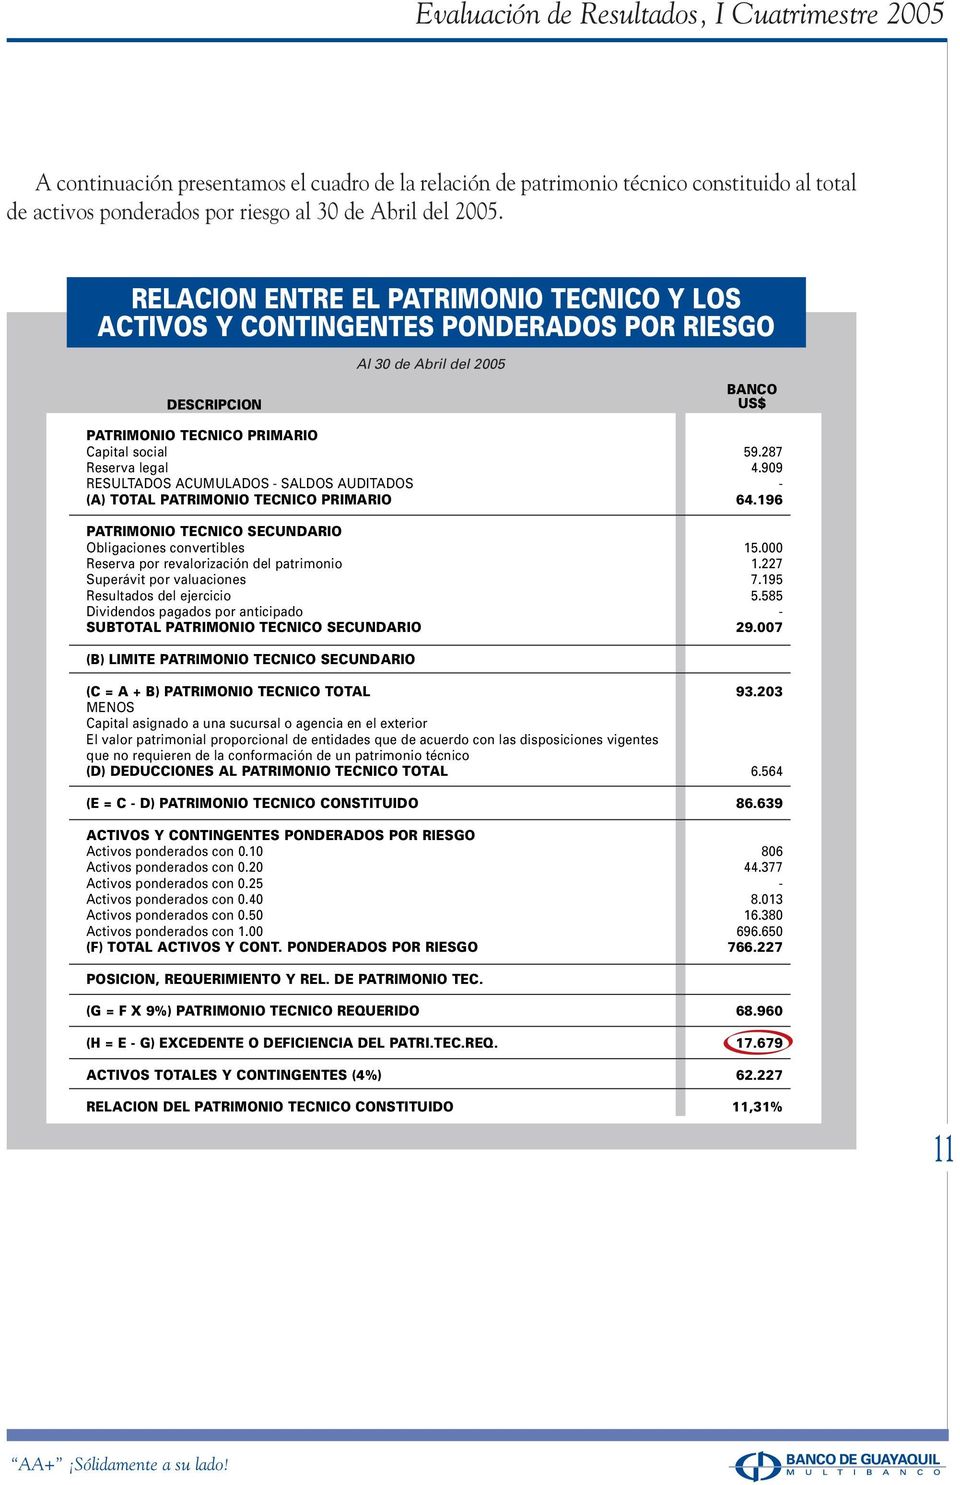 909 RESULTADOS ACUMULADOS - SALDOS AUDITADOS - (A) TOTAL PATRIMONIO TECNICO PRIMARIO 64.196 PATRIMONIO TECNICO SECUNDARIO Obligaciones convertibles 15.000 Reserva por revalorización del patrimonio 1.